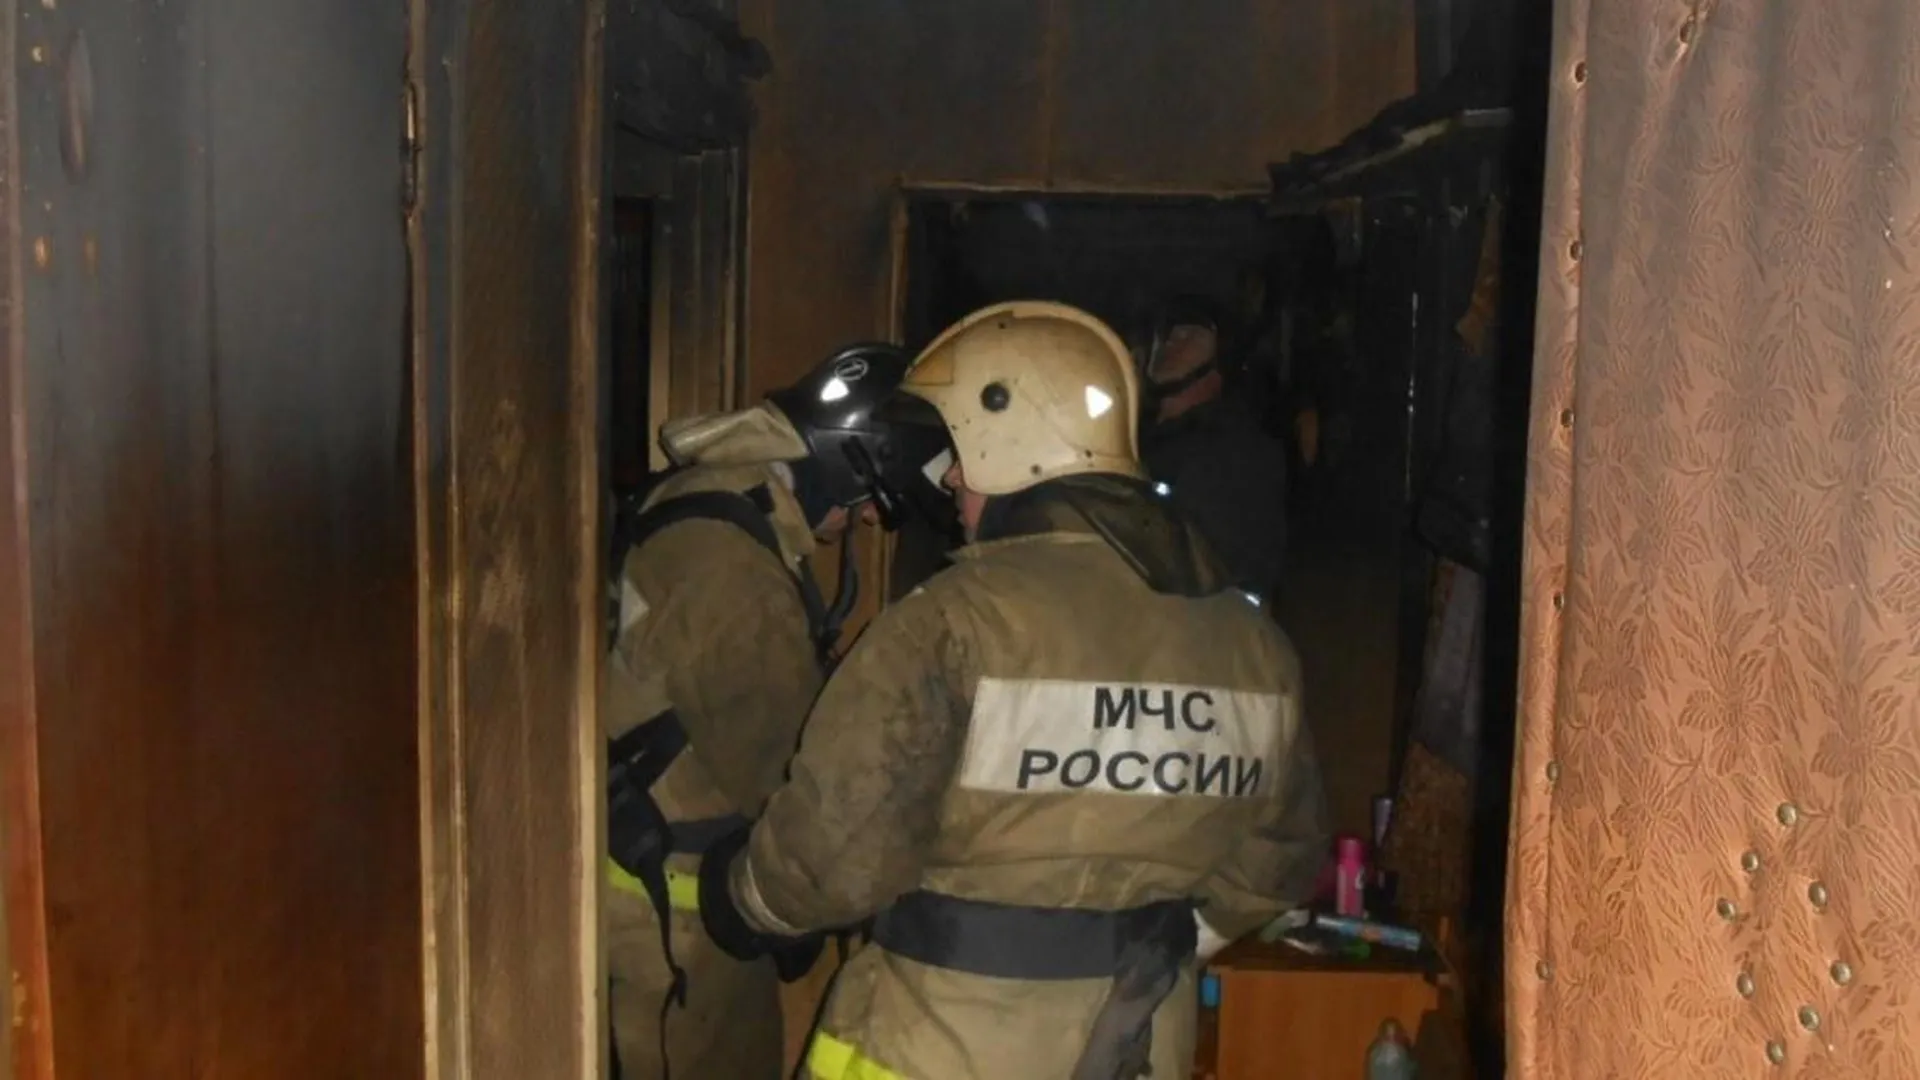 Пожар произошел в квартире в подмосковном Реутове